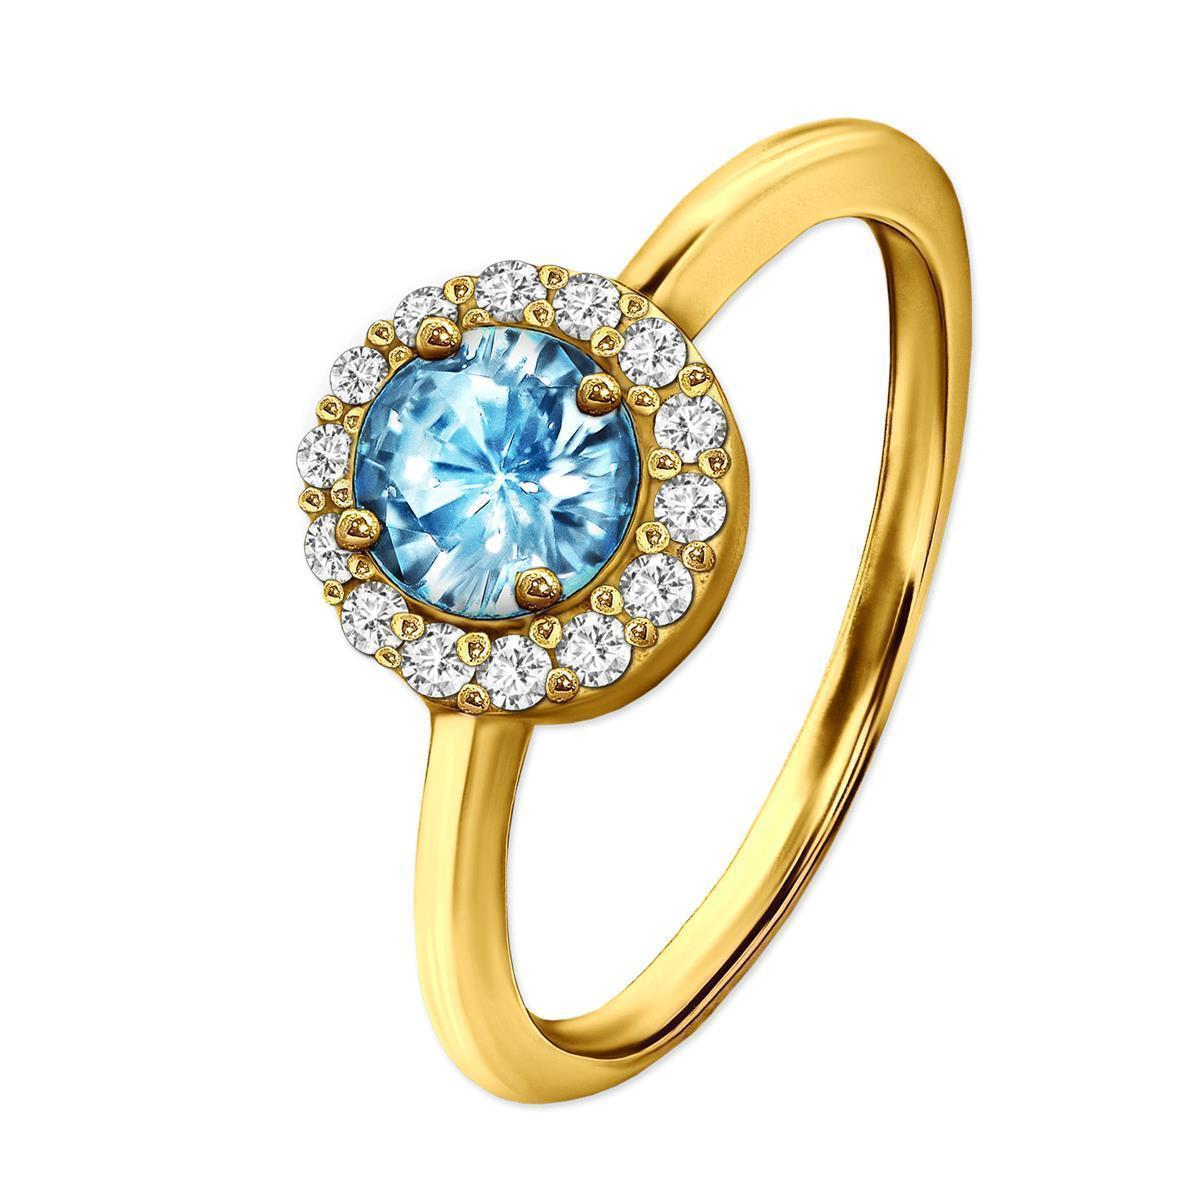 Goldner Ring großer Hellblauer Stein viele Zirkonia ringsrum 925 Sterling Silber wählbare Größe